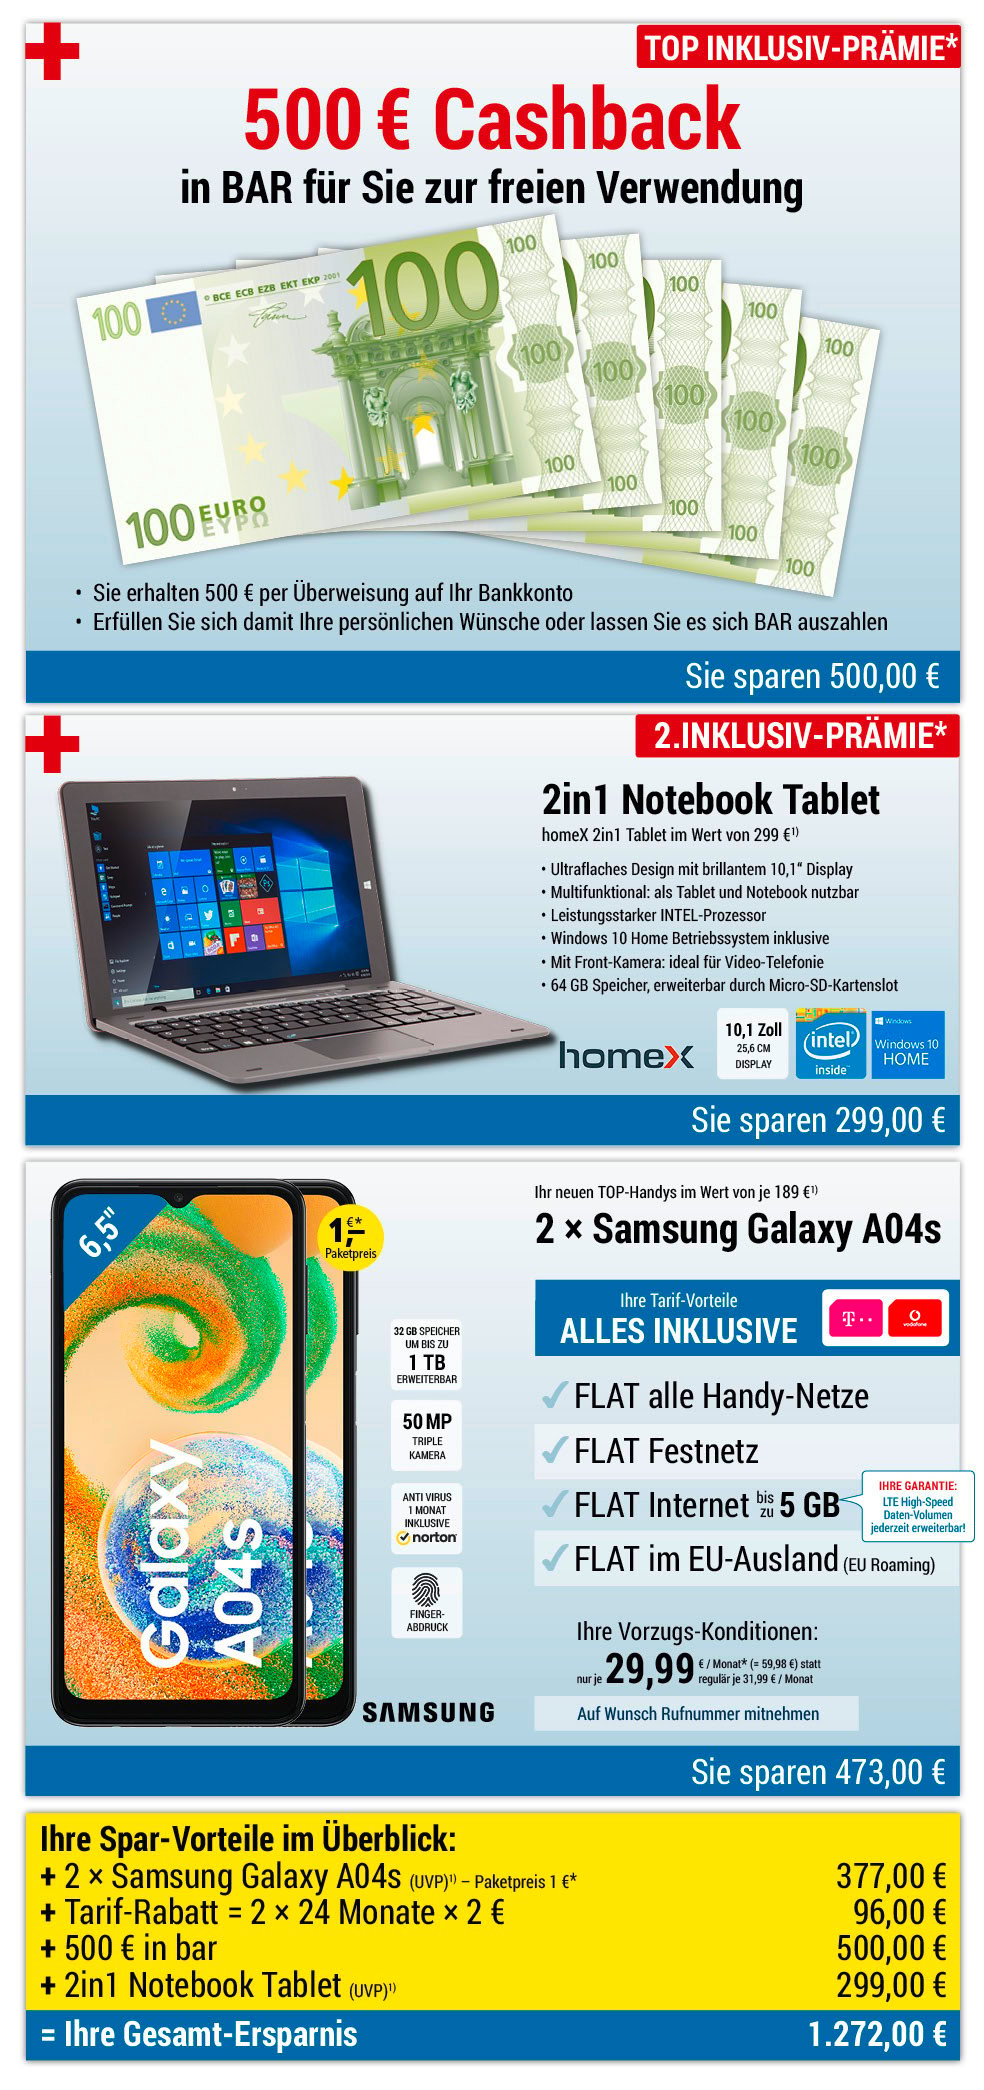 Für nur 1 €*: 2 × Samsung Galaxy A04s + 500 € bar + 2in1 Notebook INKLUSIVE + Handyverträge mit ALL NET FLAT für je 29,99 €/Monat